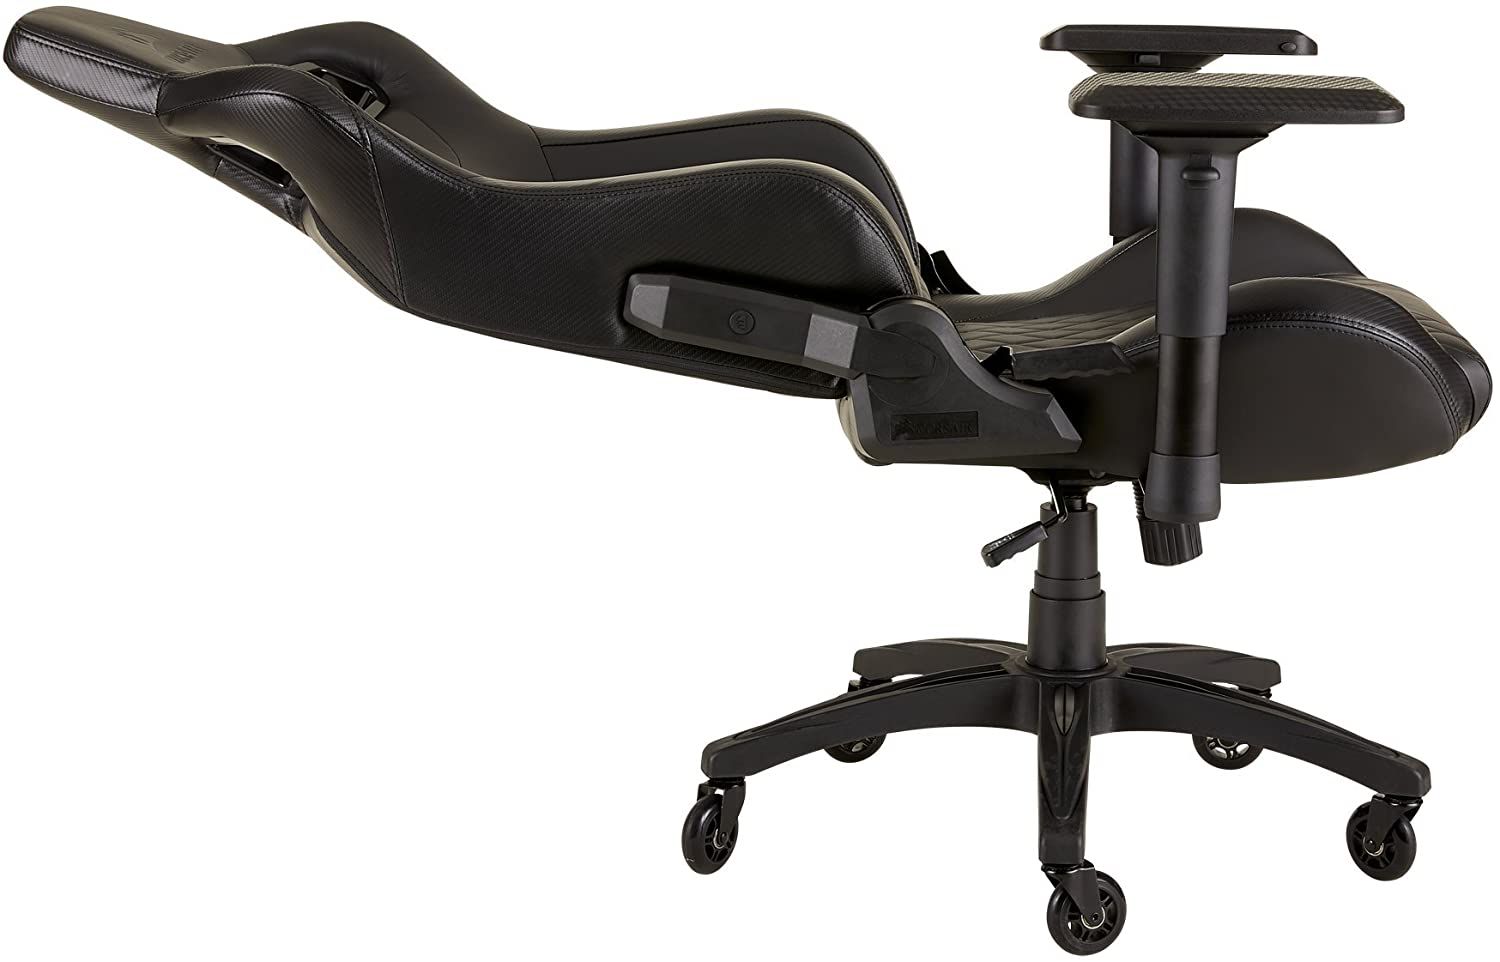 Corsair T1 Gaming Chair recline